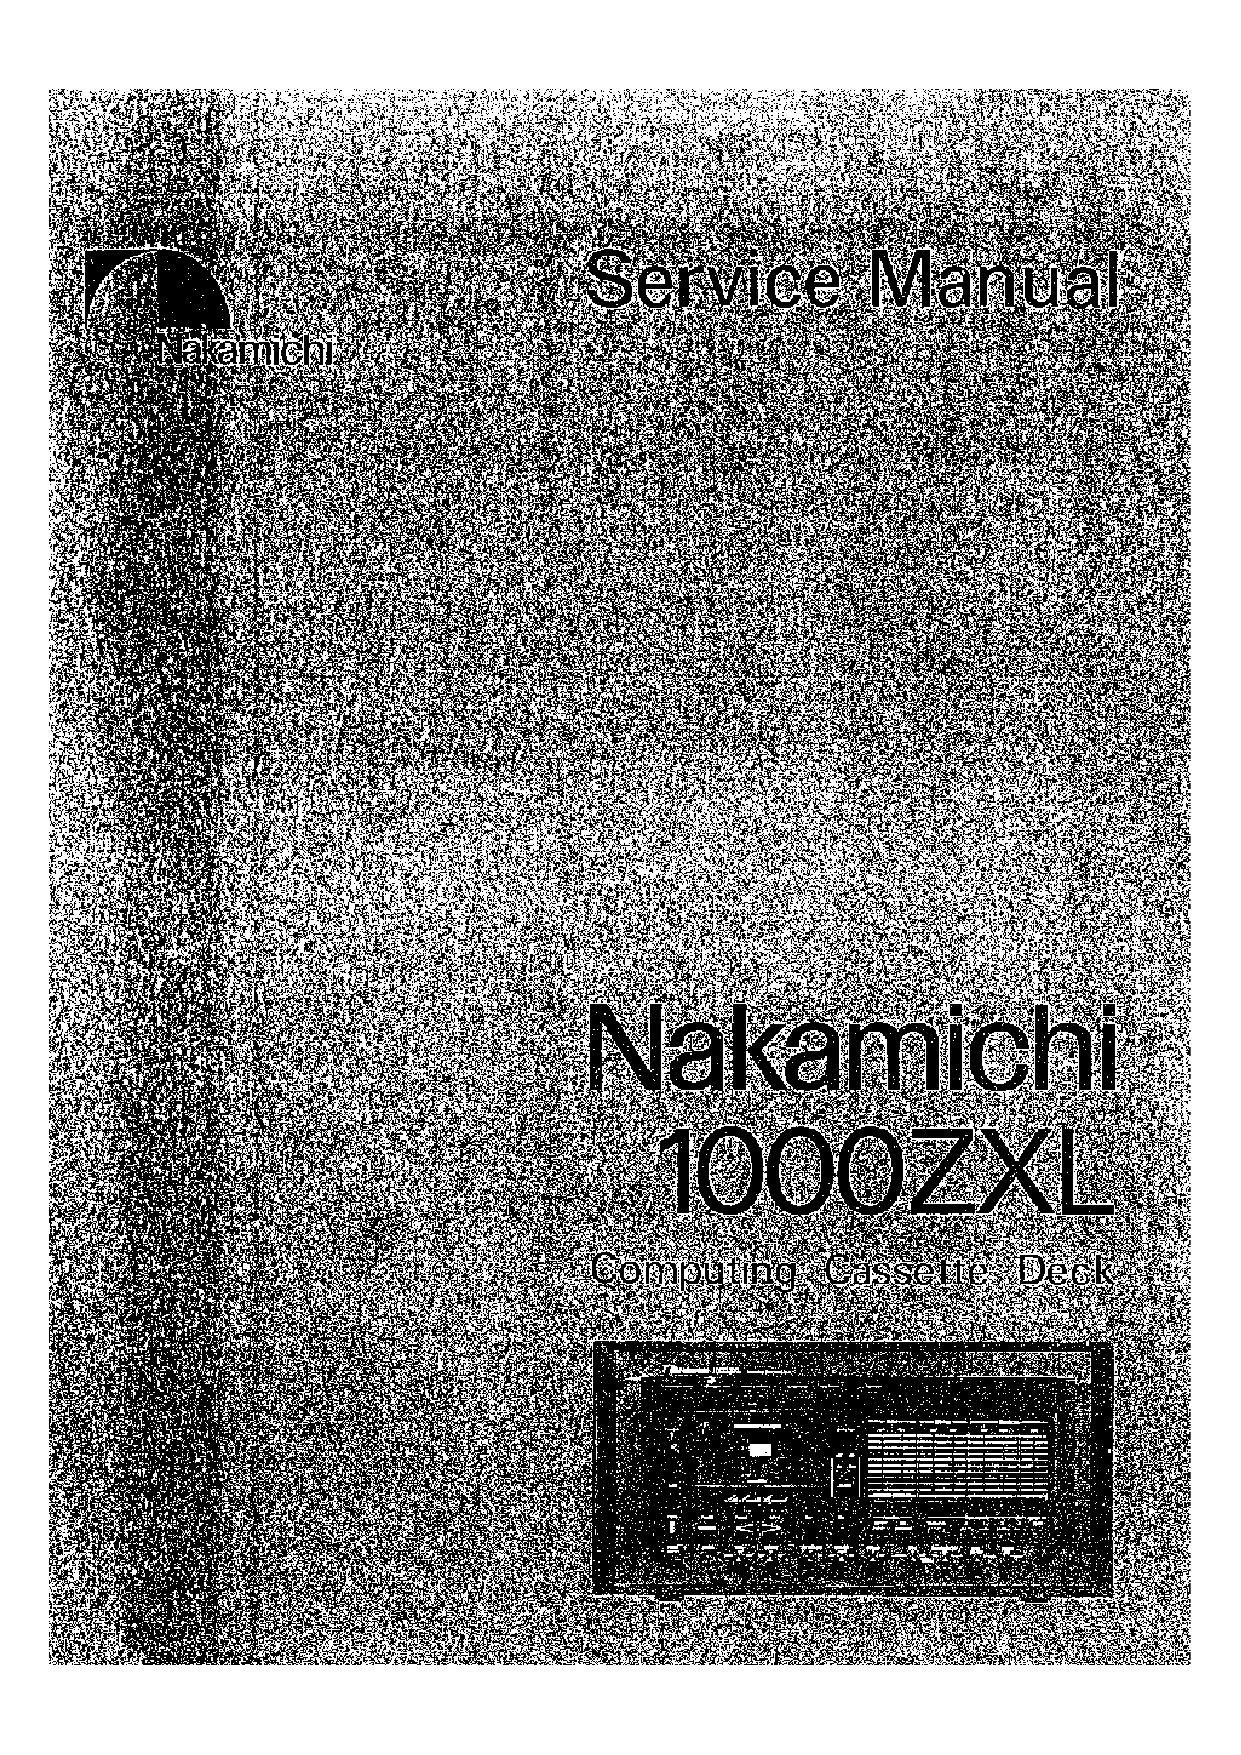 Nakamichi 1000 ZXL Service Manual